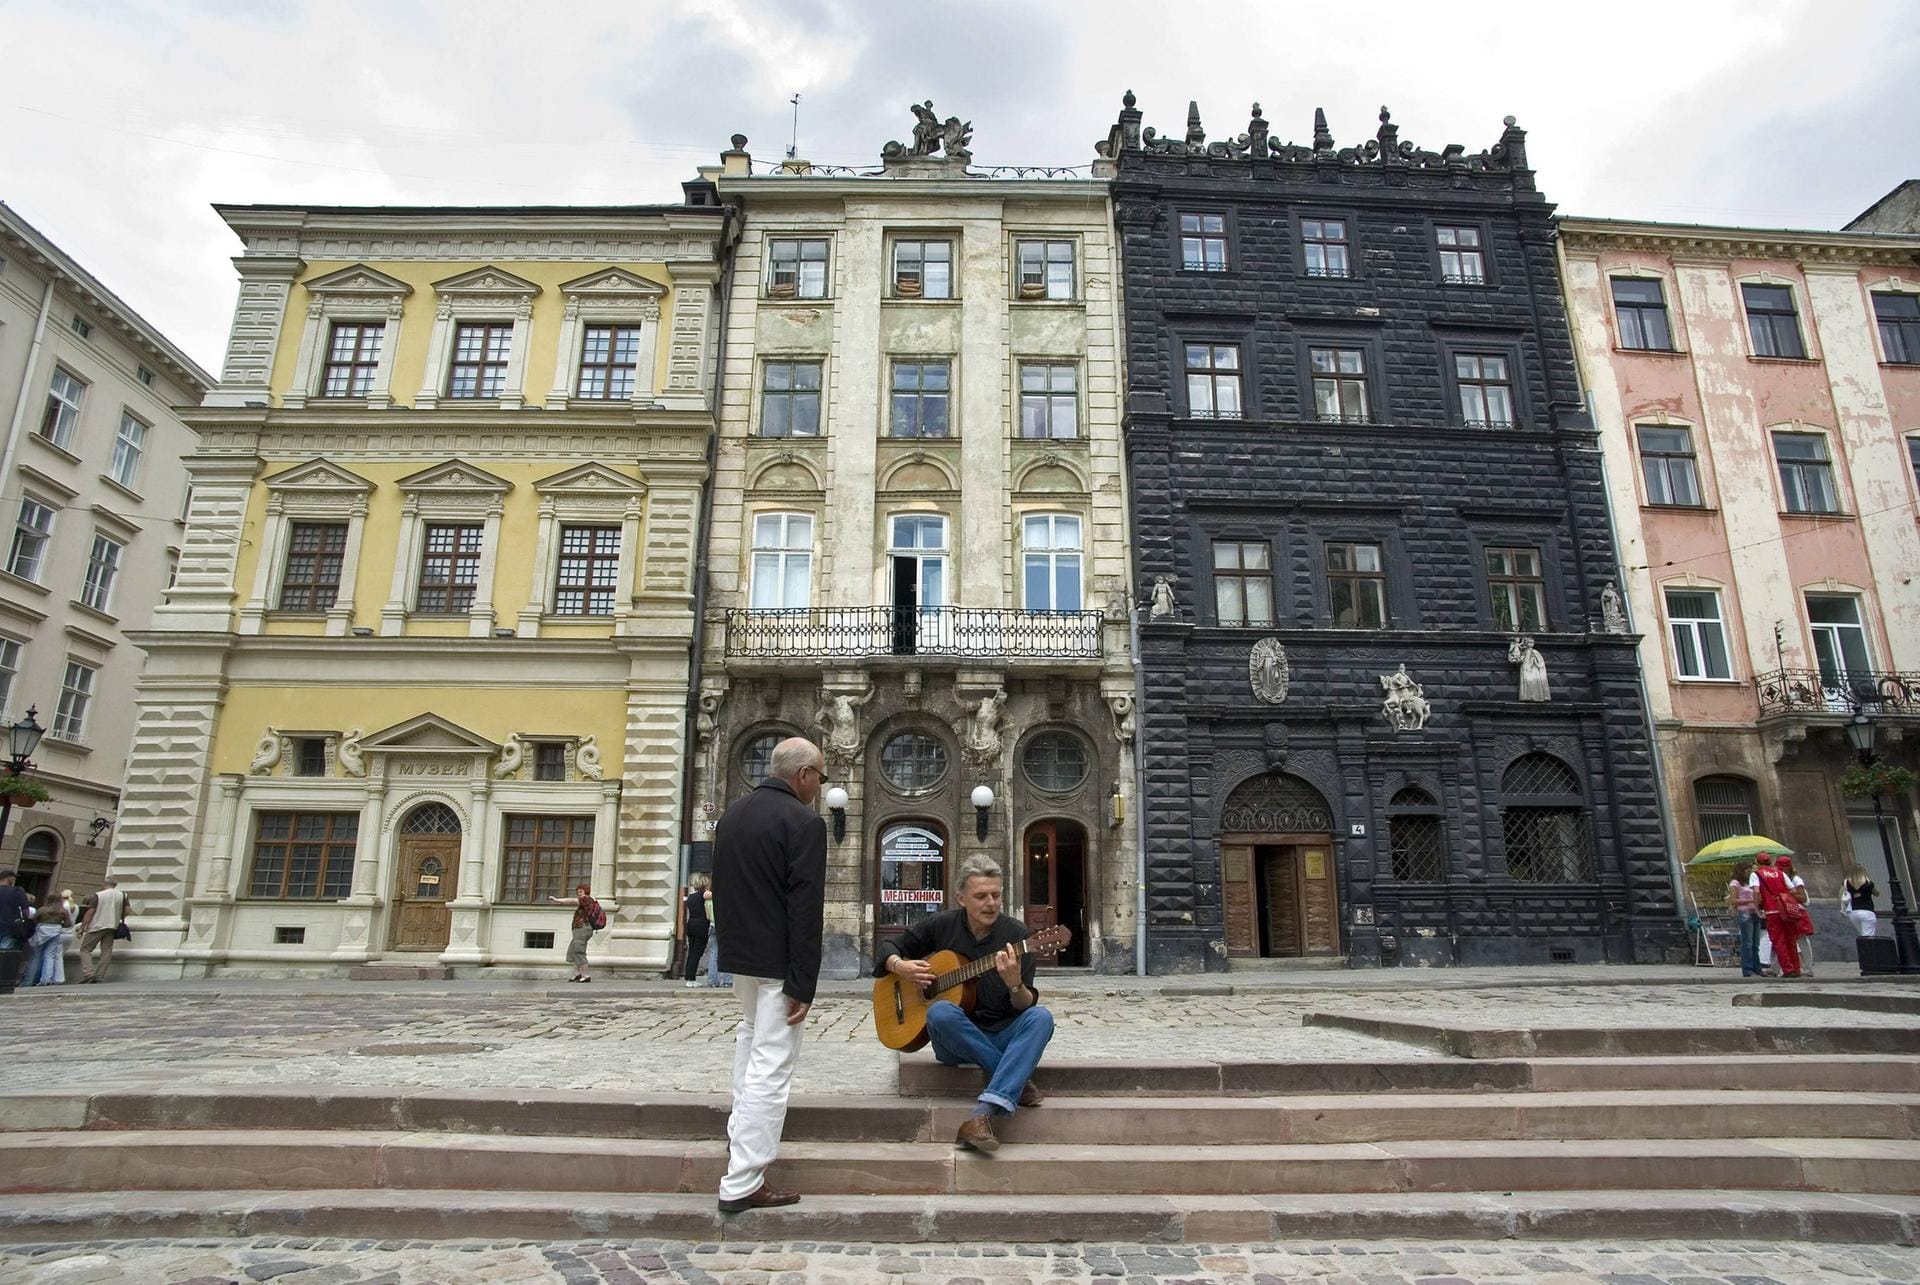 Das Schwarze Haus am Grossen Markt (Rynok). Der Rynok ist UNESCO-Weltkulturerbe und zählt zu den fünf wichtigsten Renaissance-Marktplätzen.